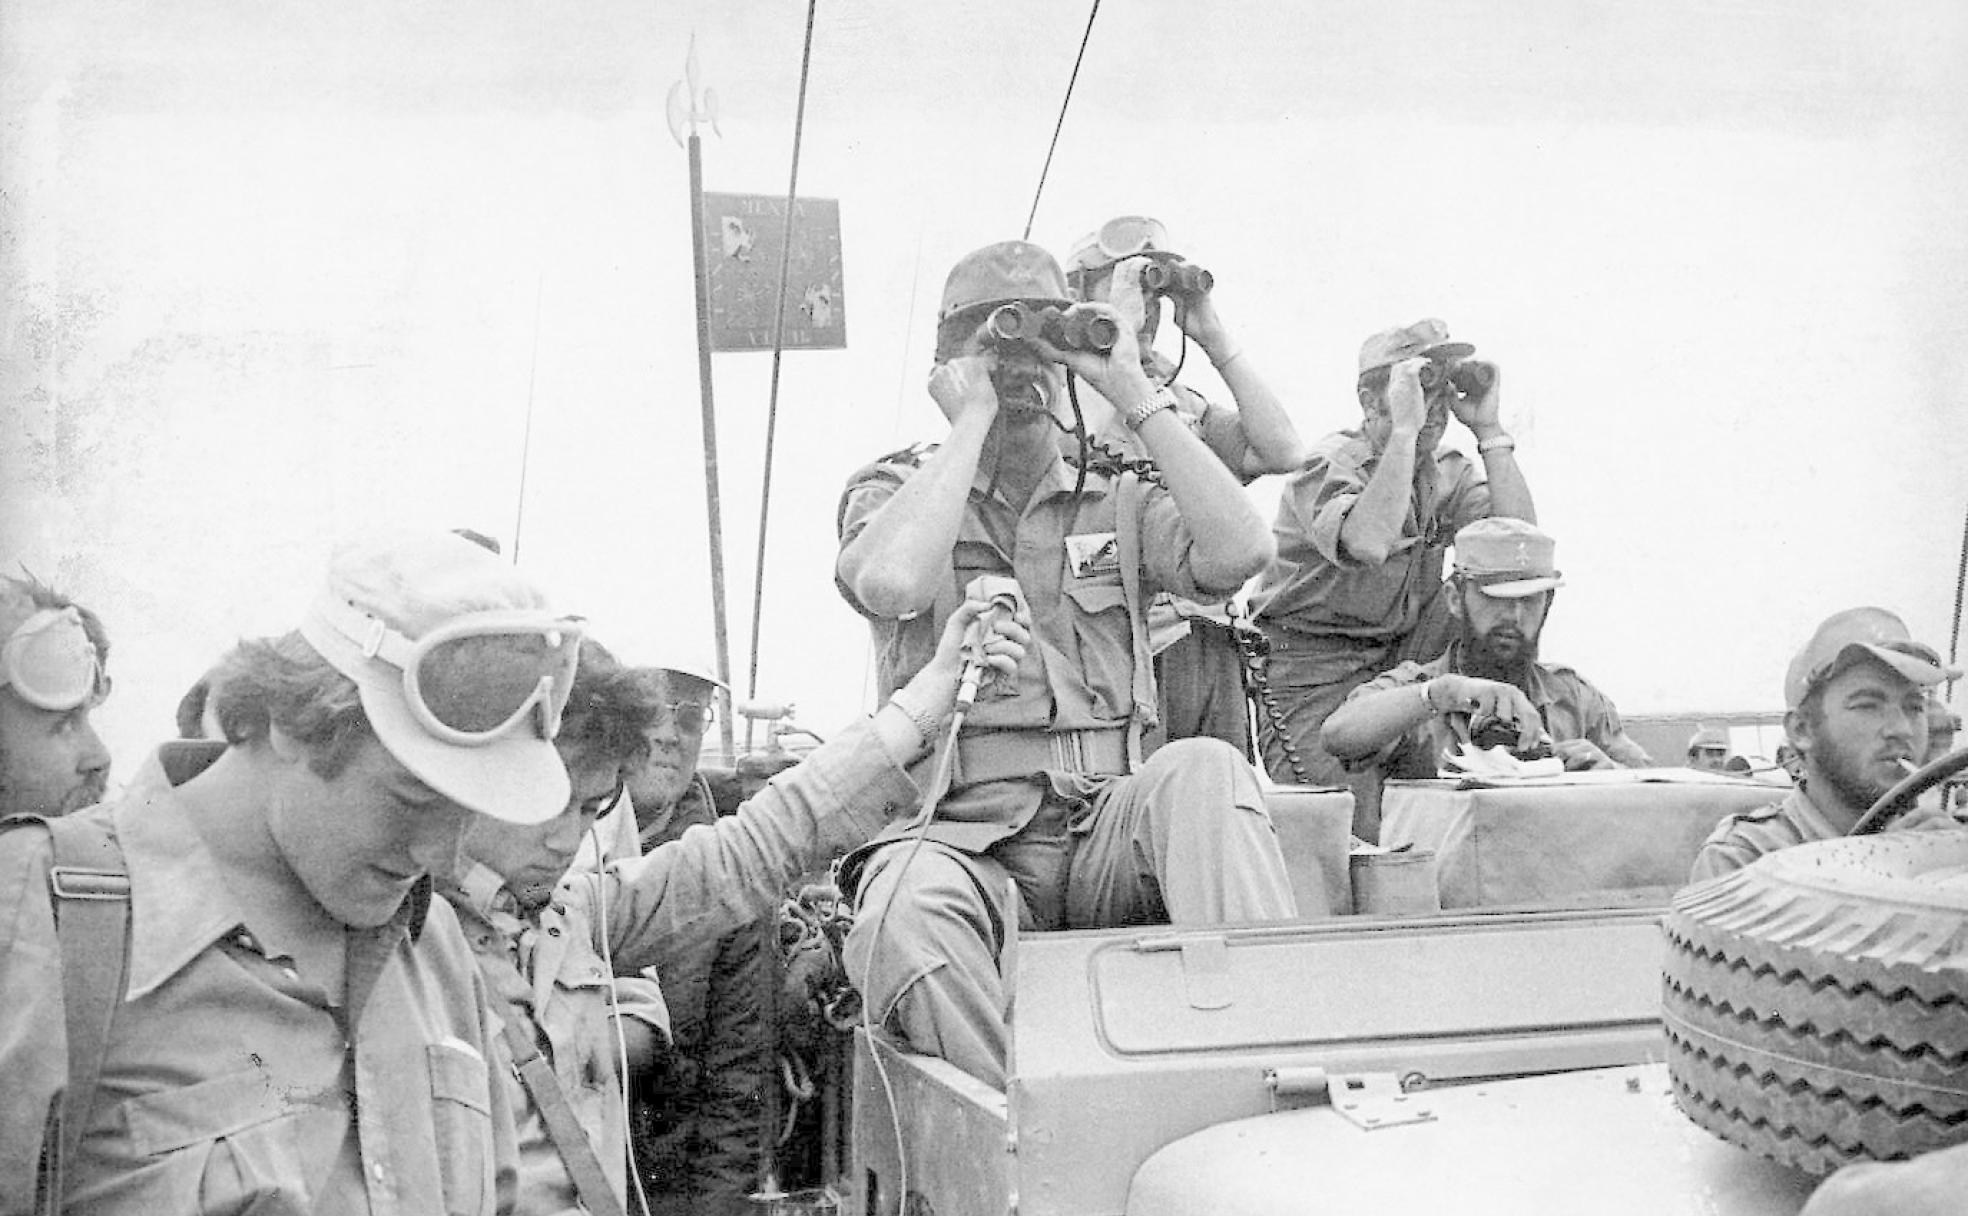 Tropas españolas desplegadas el 7 de noviembre de 1975 para vigilar la Marcha Verde de Marruecos sobre el entonces Sáhara español.